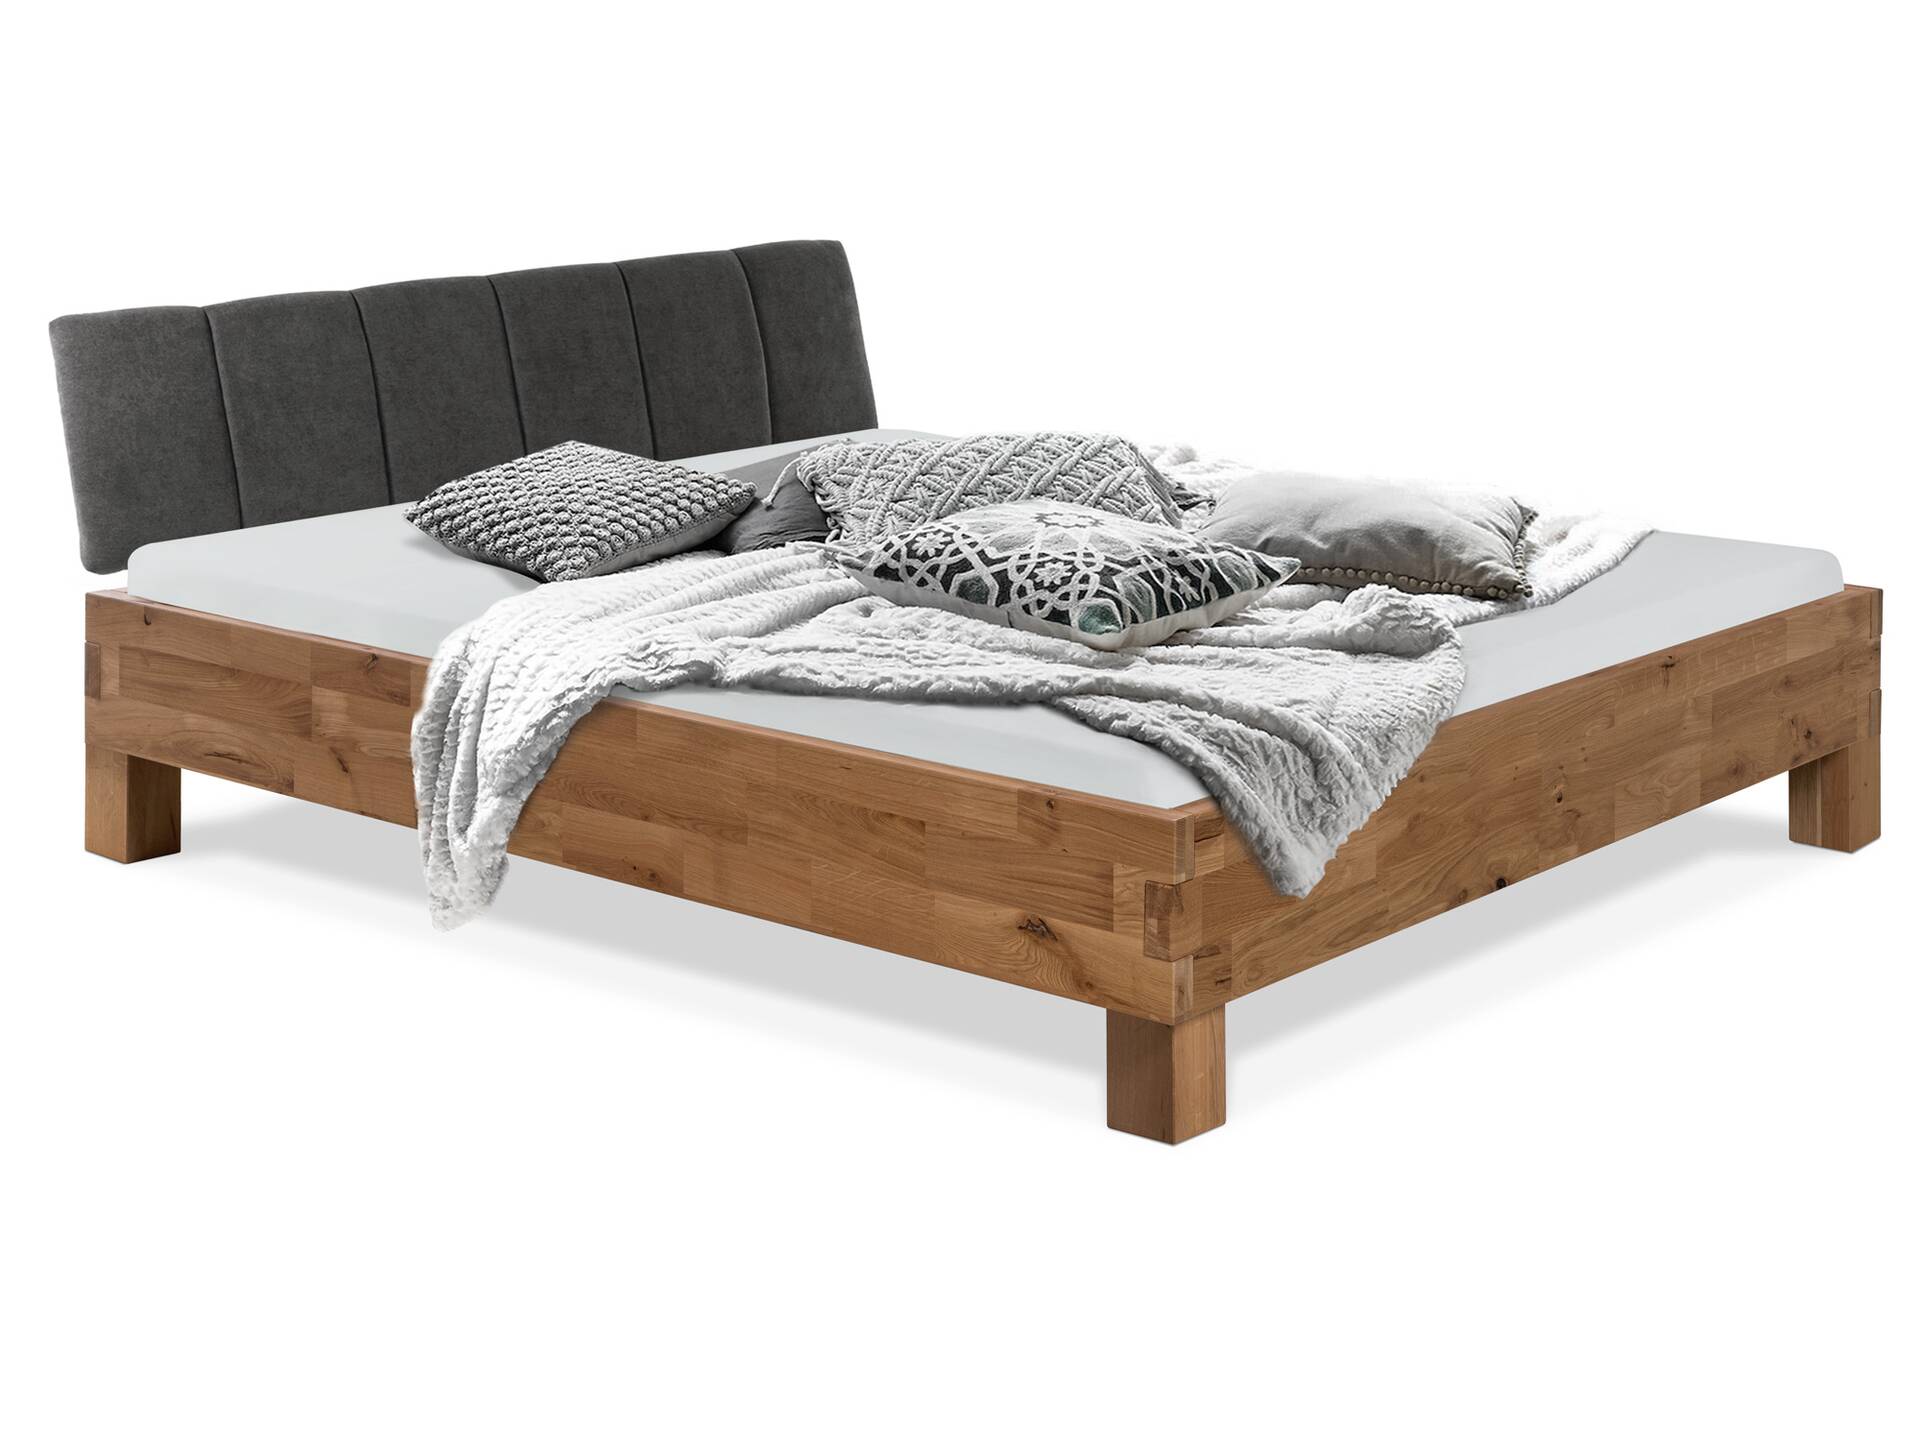 CORDINO 4-Fuß-Bett aus gebürsteter Eiche mit gestepptem Stoff-Kopfteil, Material Massivholz 120 x 200 cm | Eiche unbehandelt | Stoff Anthrazit